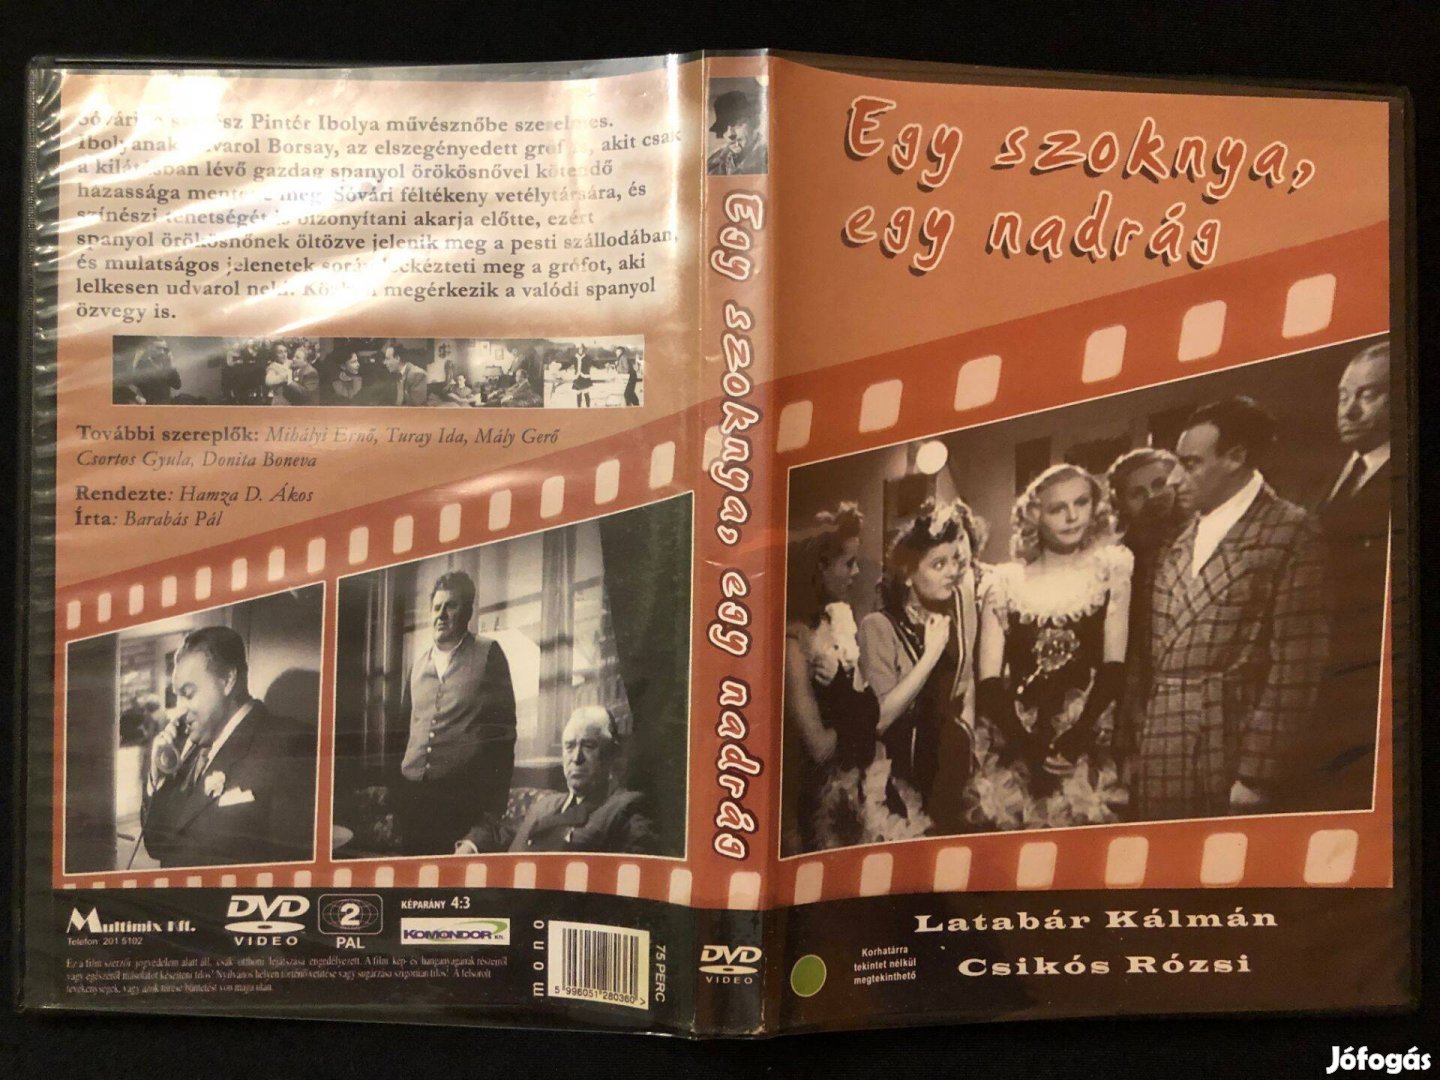 Egy szoknya, egy nadrág (Latabár Kálmán, Multimix kiadás) DVD